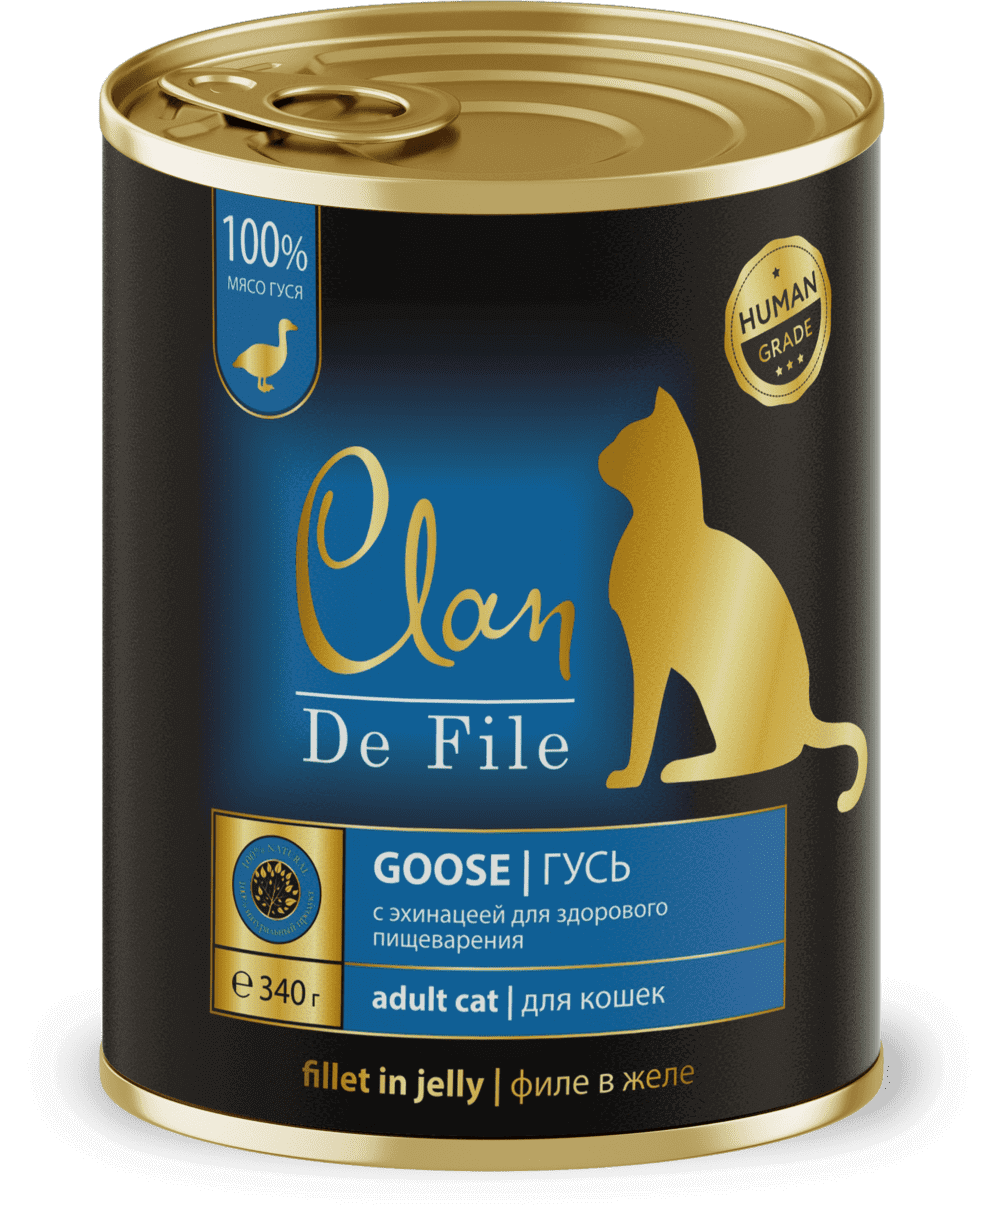 Clan De File Консервы для кошек (гусь)